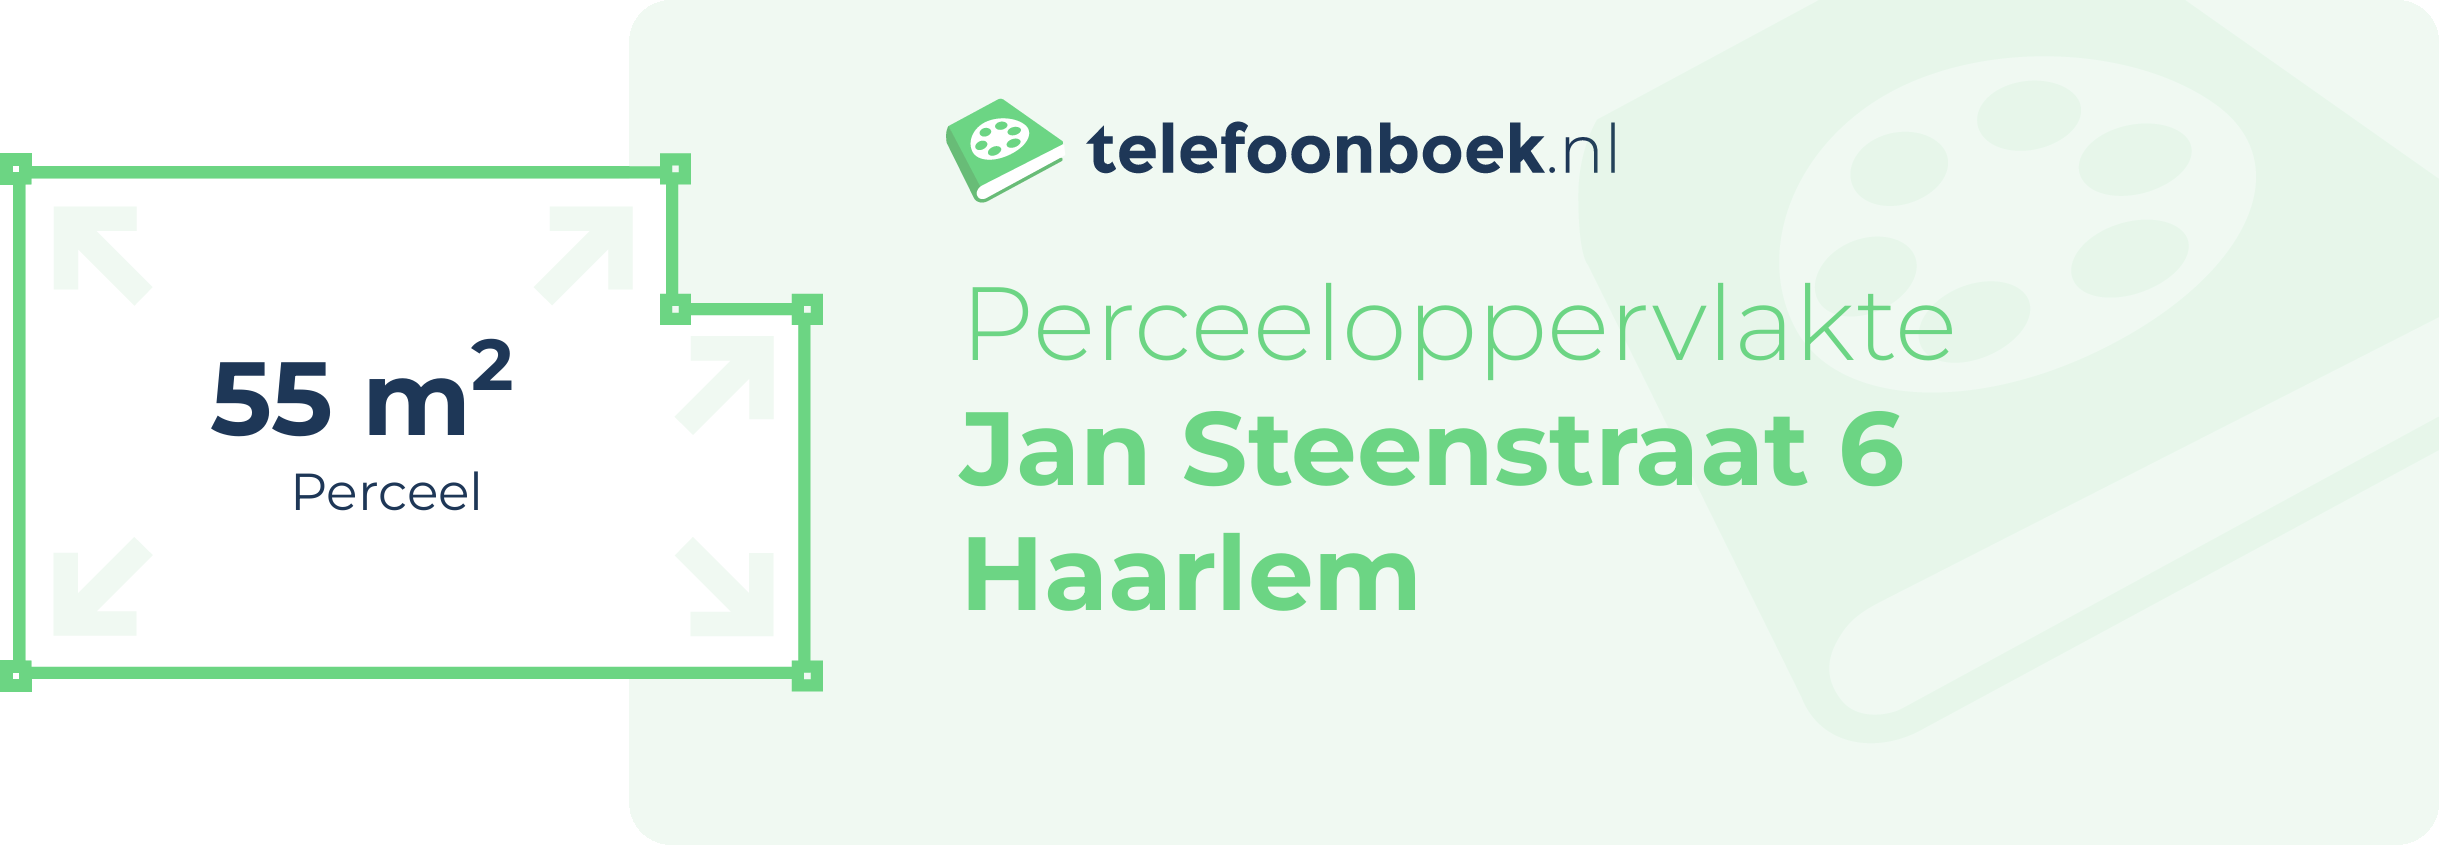 Perceeloppervlakte Jan Steenstraat 6 Haarlem